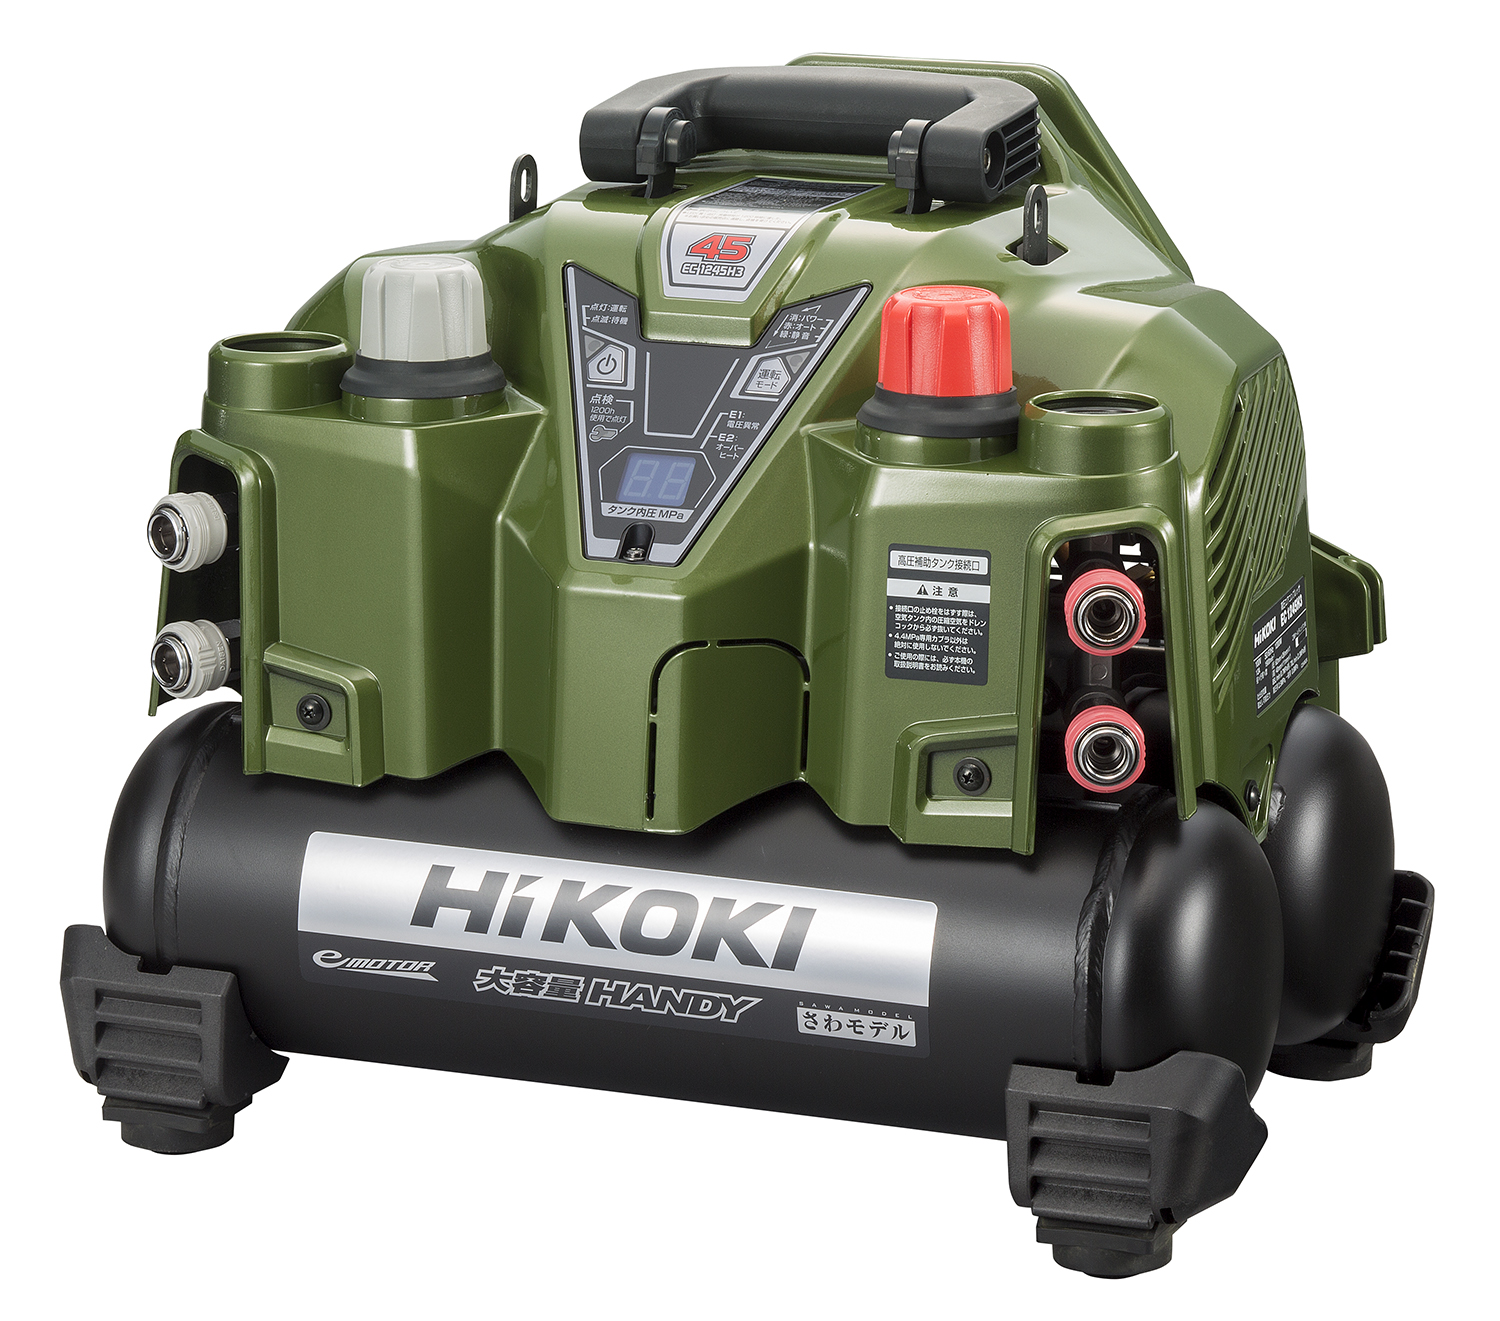 入荷予定HiKOKI 高圧エアコンプレッサ EC1245H3 100V 50/60Hz 常圧 高圧 エアー コンプレッサー 電動 工具 中古 未使用品 ハイコーキ コンプレッサー